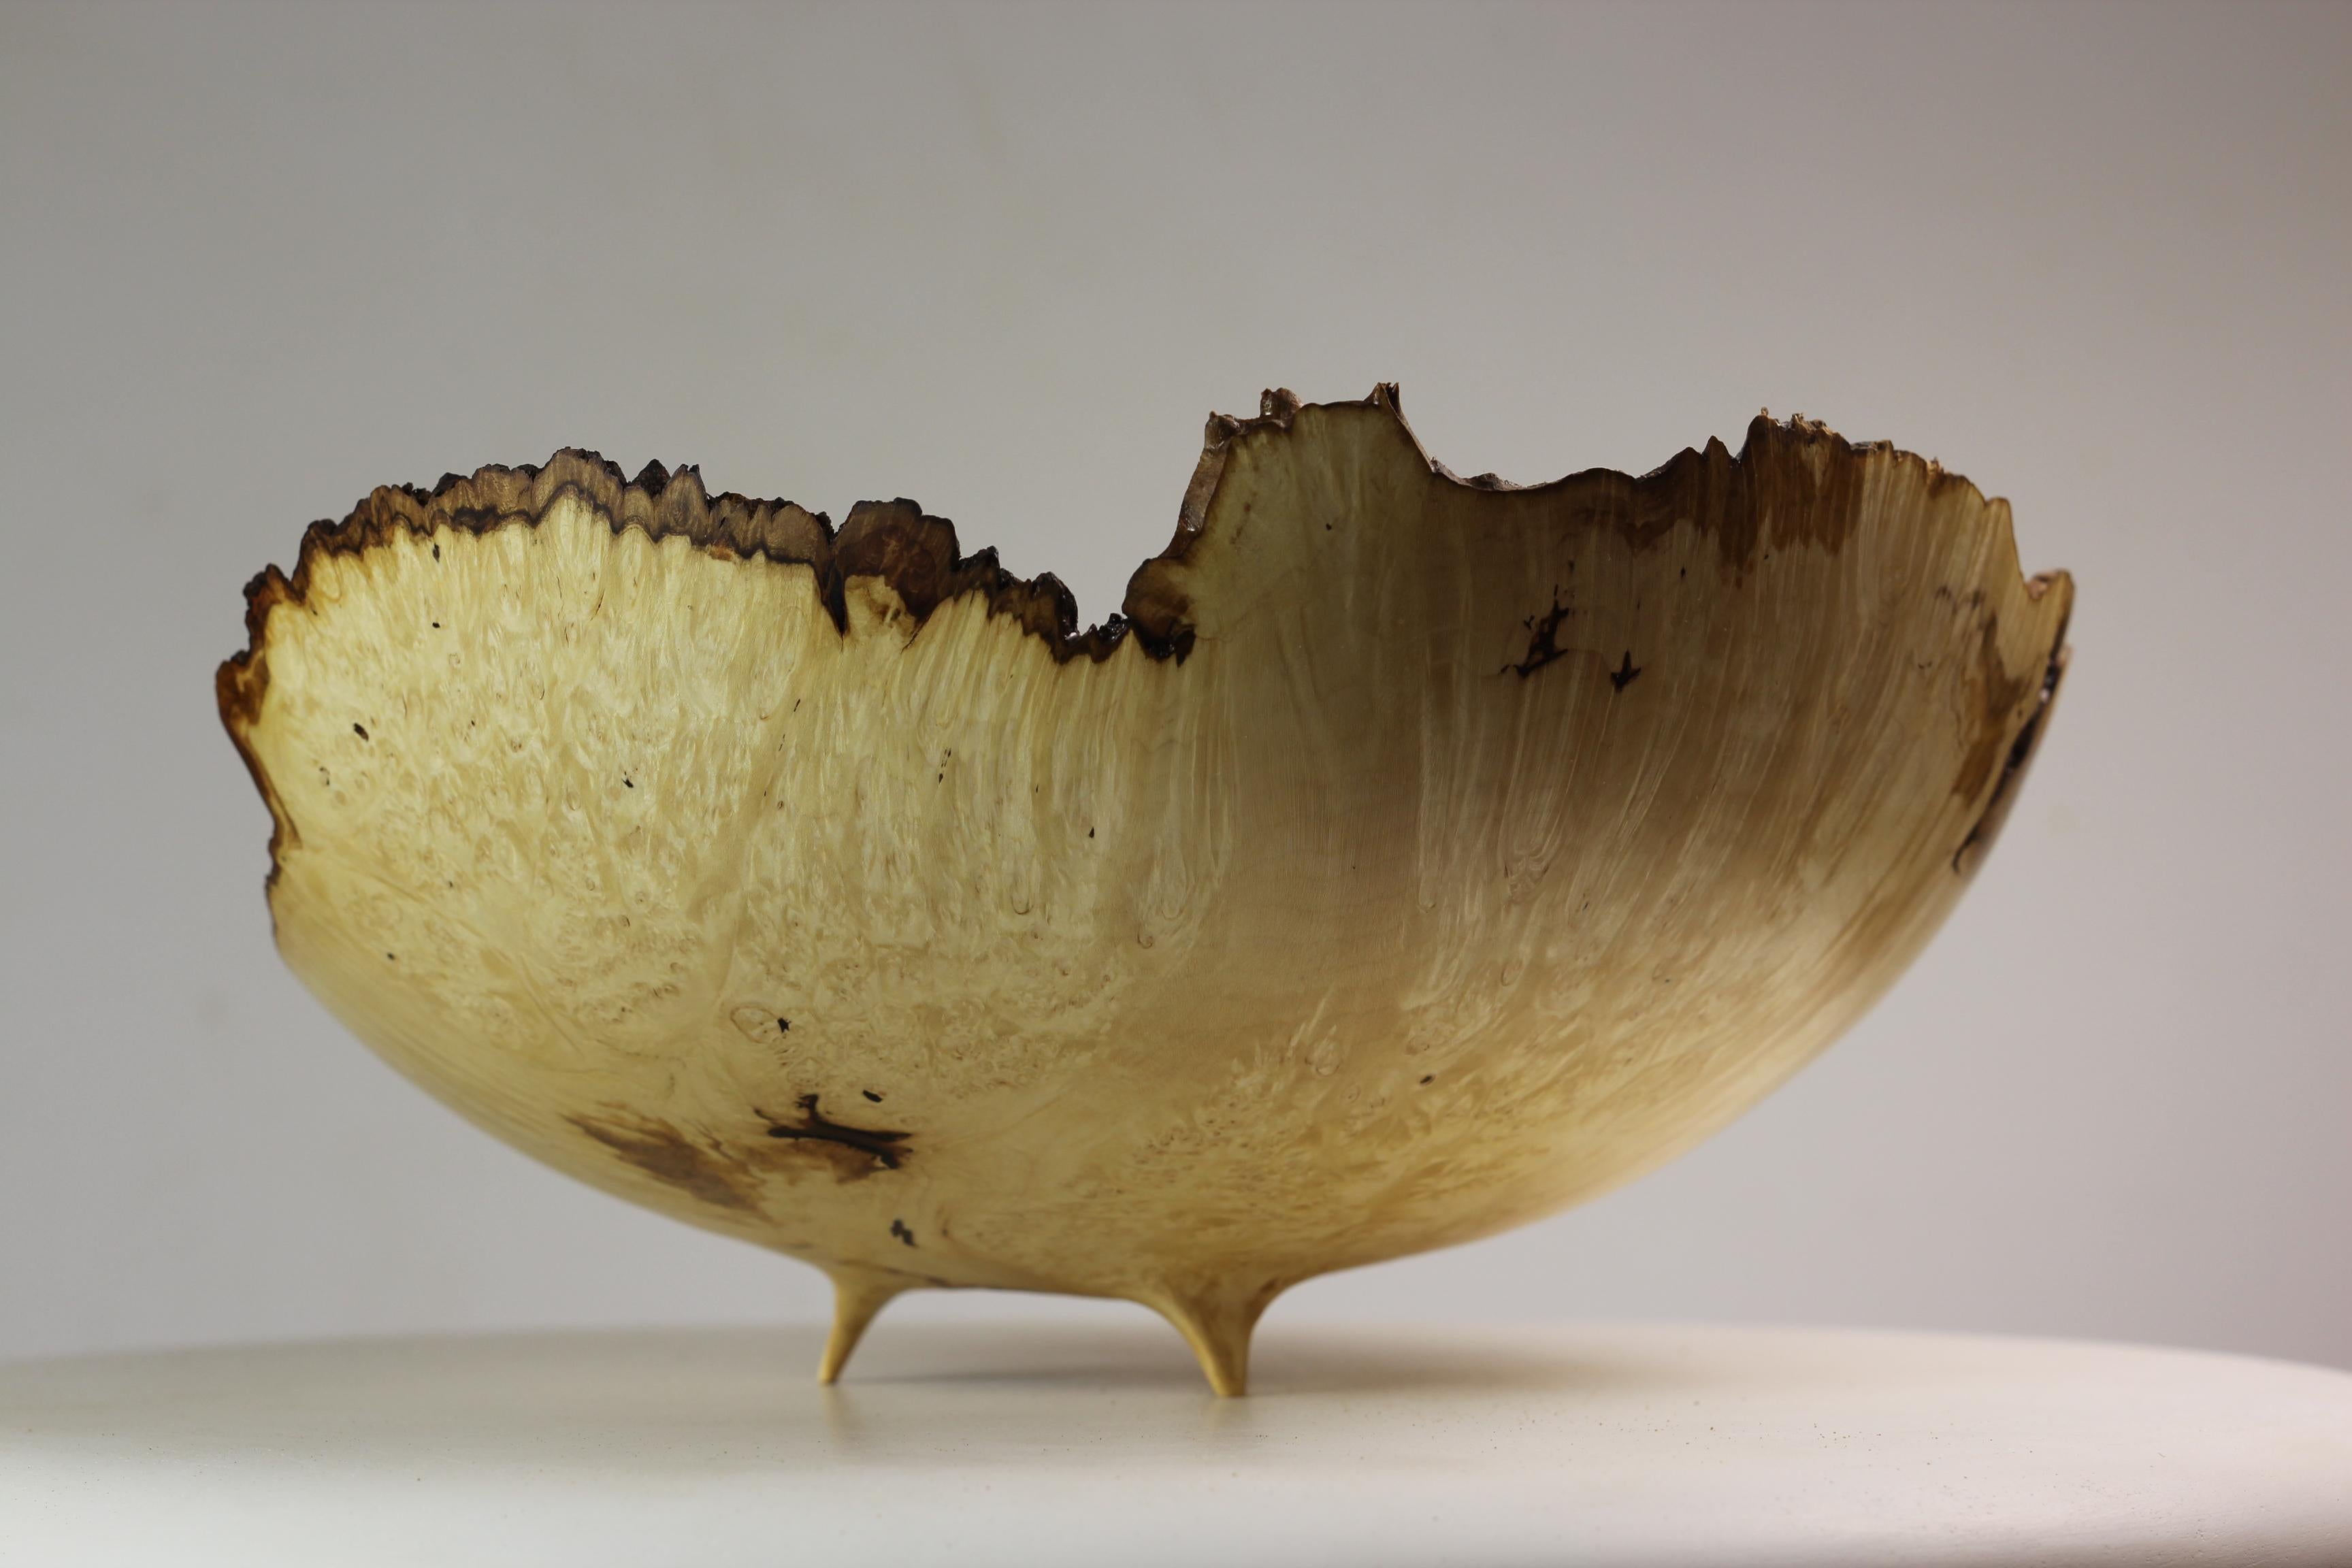 Russian Unique Maple Burl Bowl by Vlad Droz